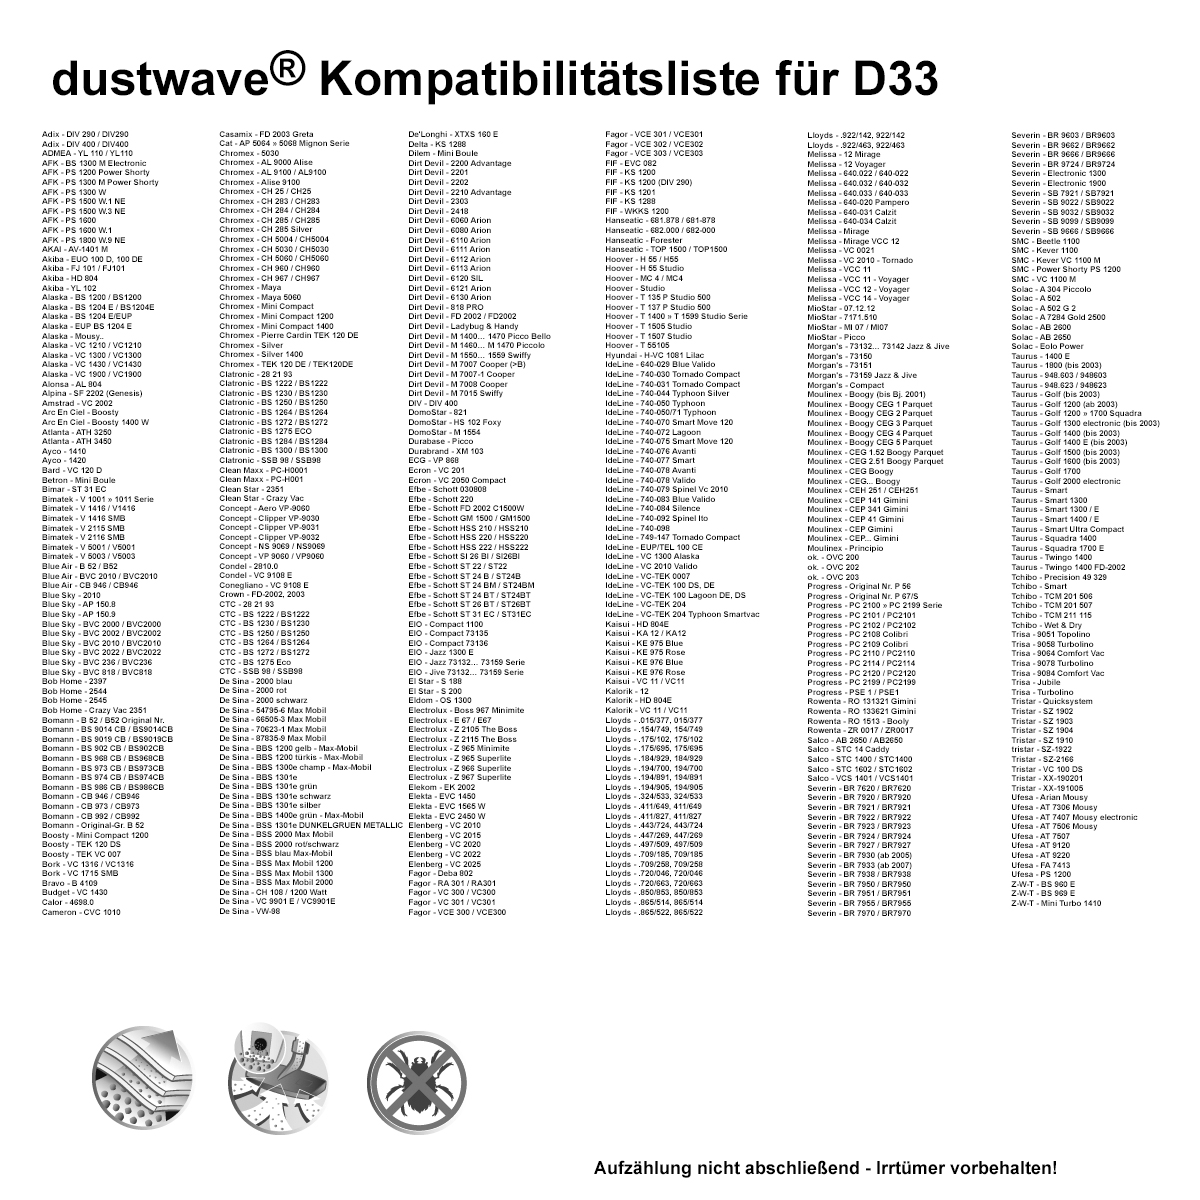 Dustwave® 10 Staubsaugerbeutel für Delta KS 1288 - hocheffizient, mehrlagiges Mikrovlies mit Hygieneverschluss - Made in Germany